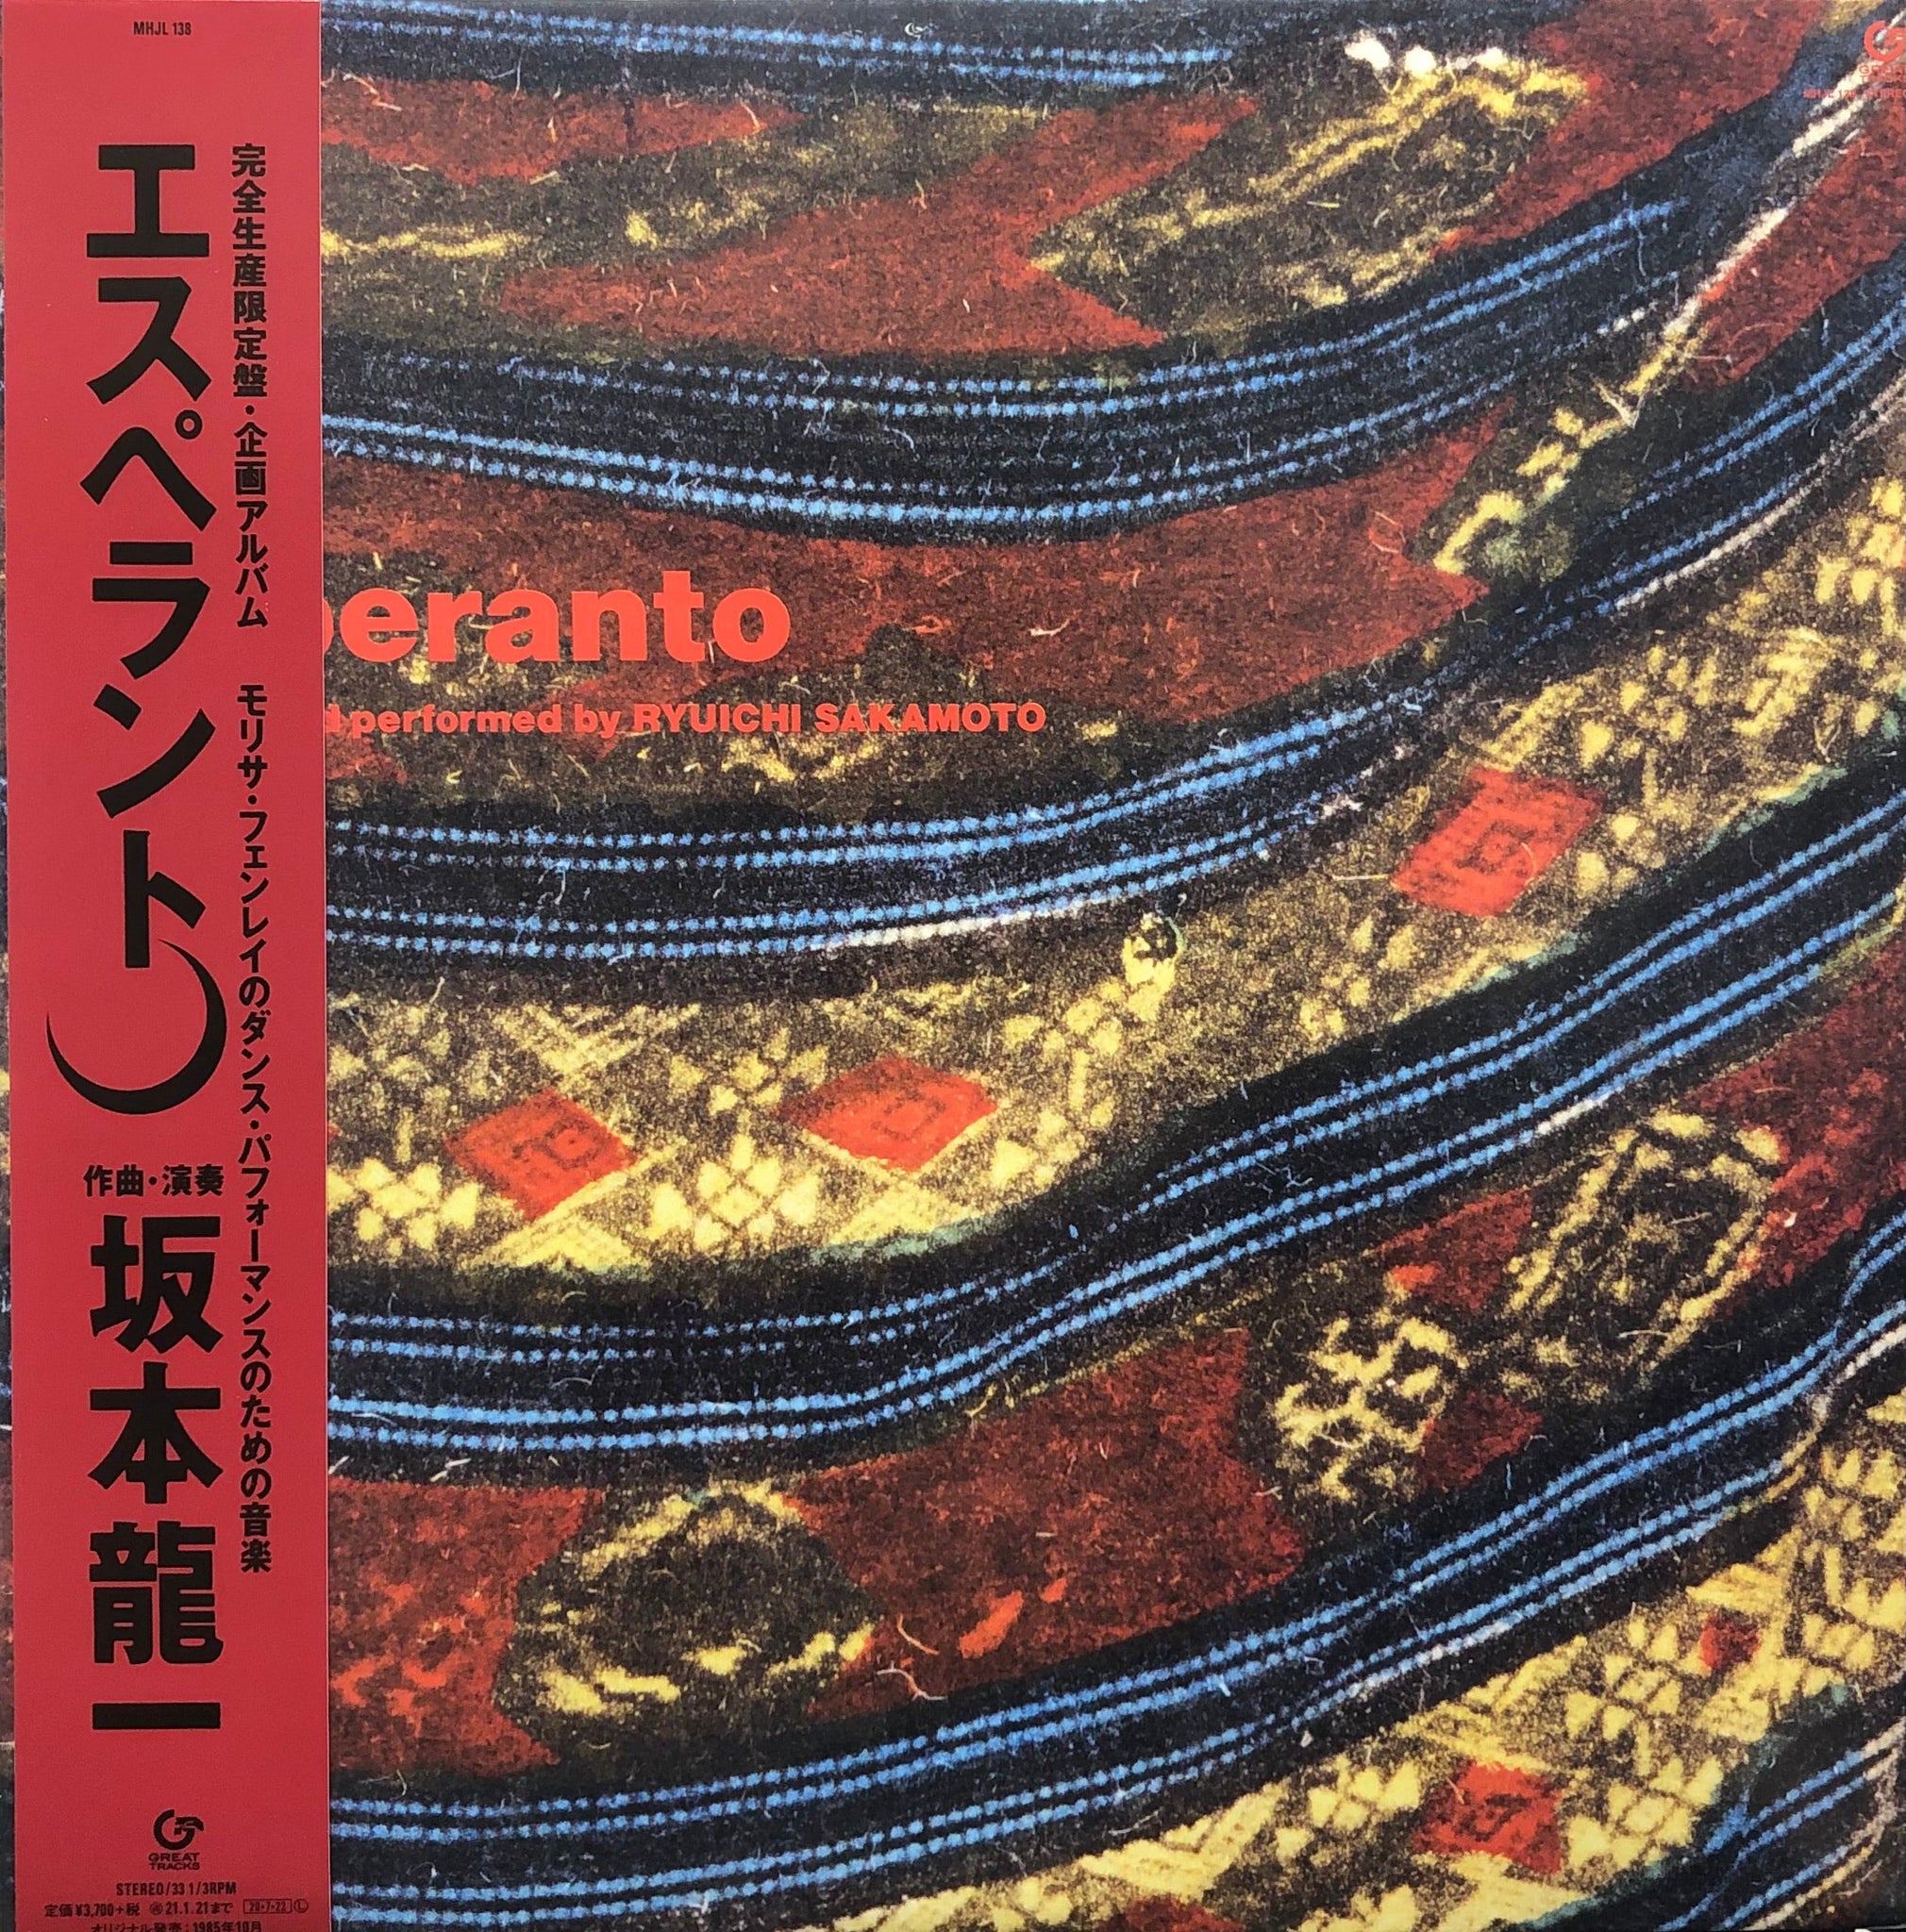 坂本龍一 Ryuichi Sakamoto / Esperanto エスペラント (Great Tracks, MHJL 138, LP)